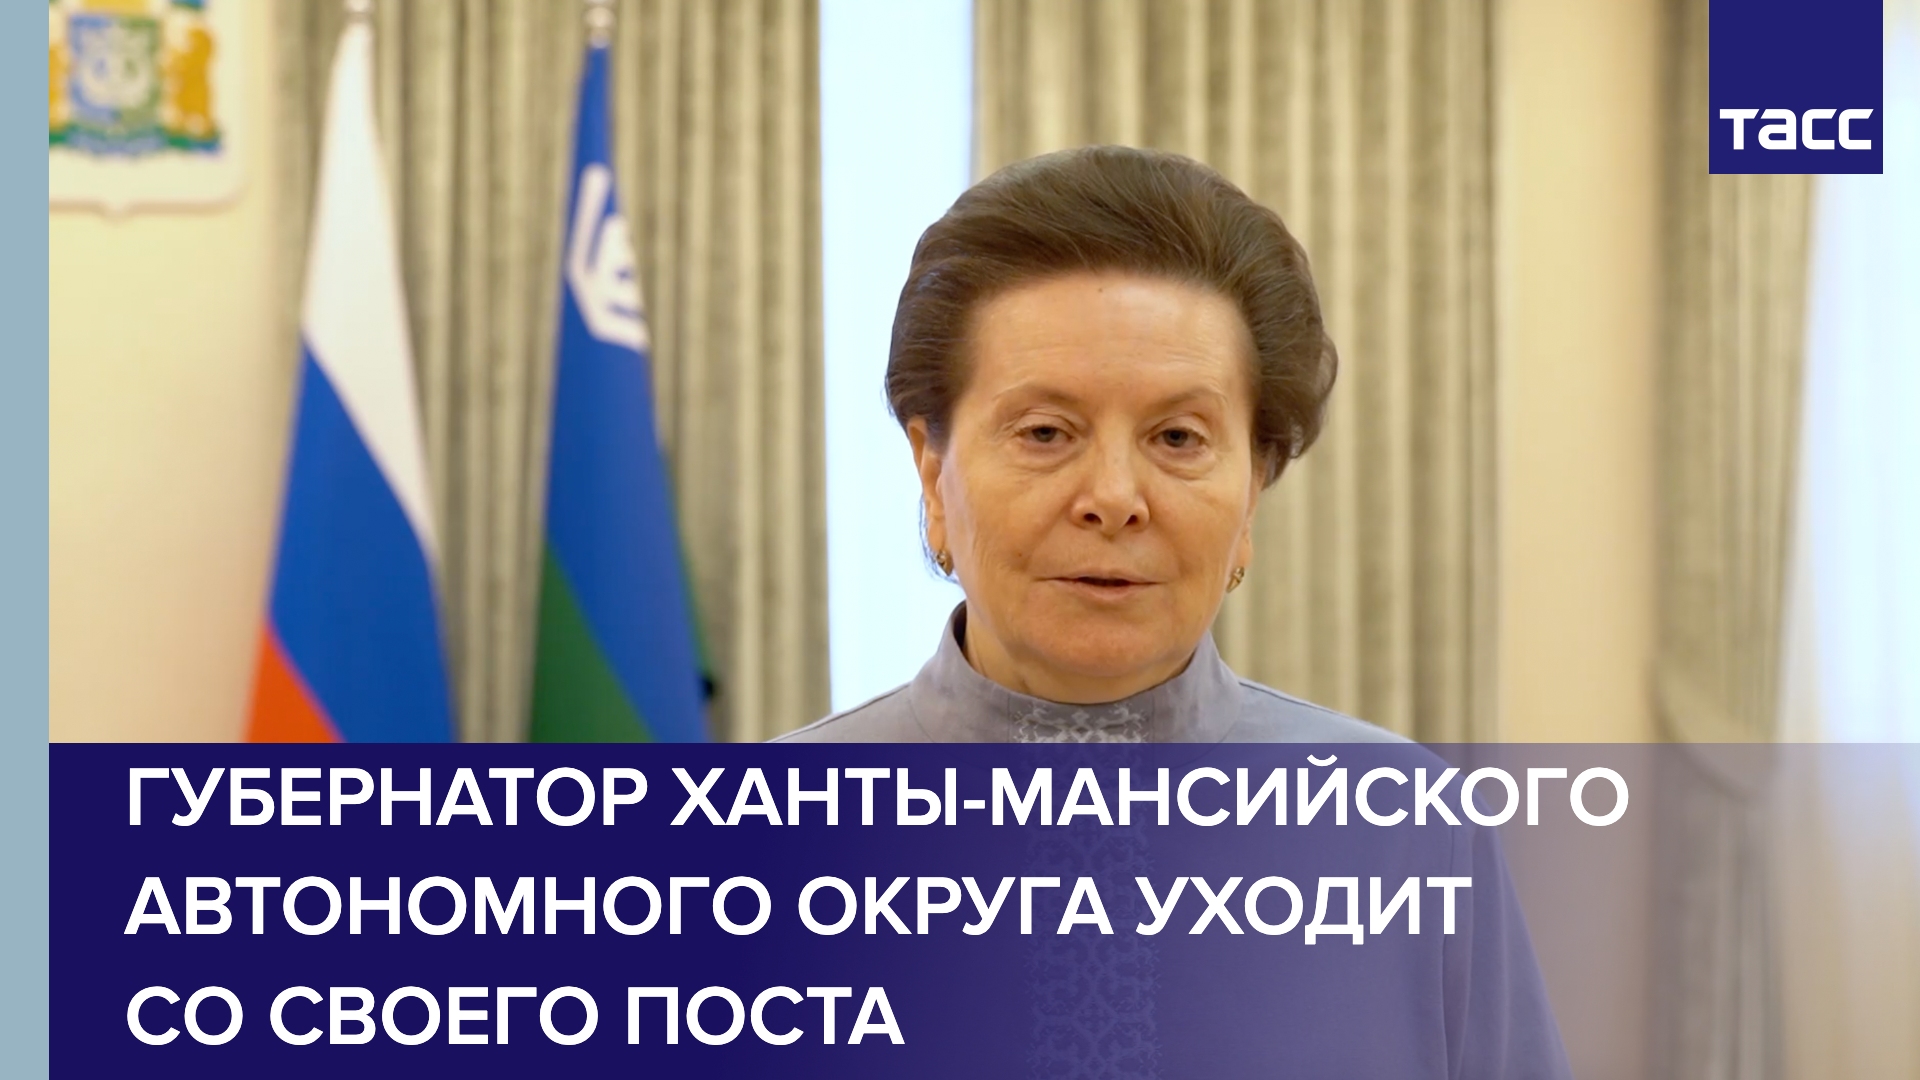 Губернатор Ханты-Мансийского автономного округа Наталья Комарова уходит со своего поста